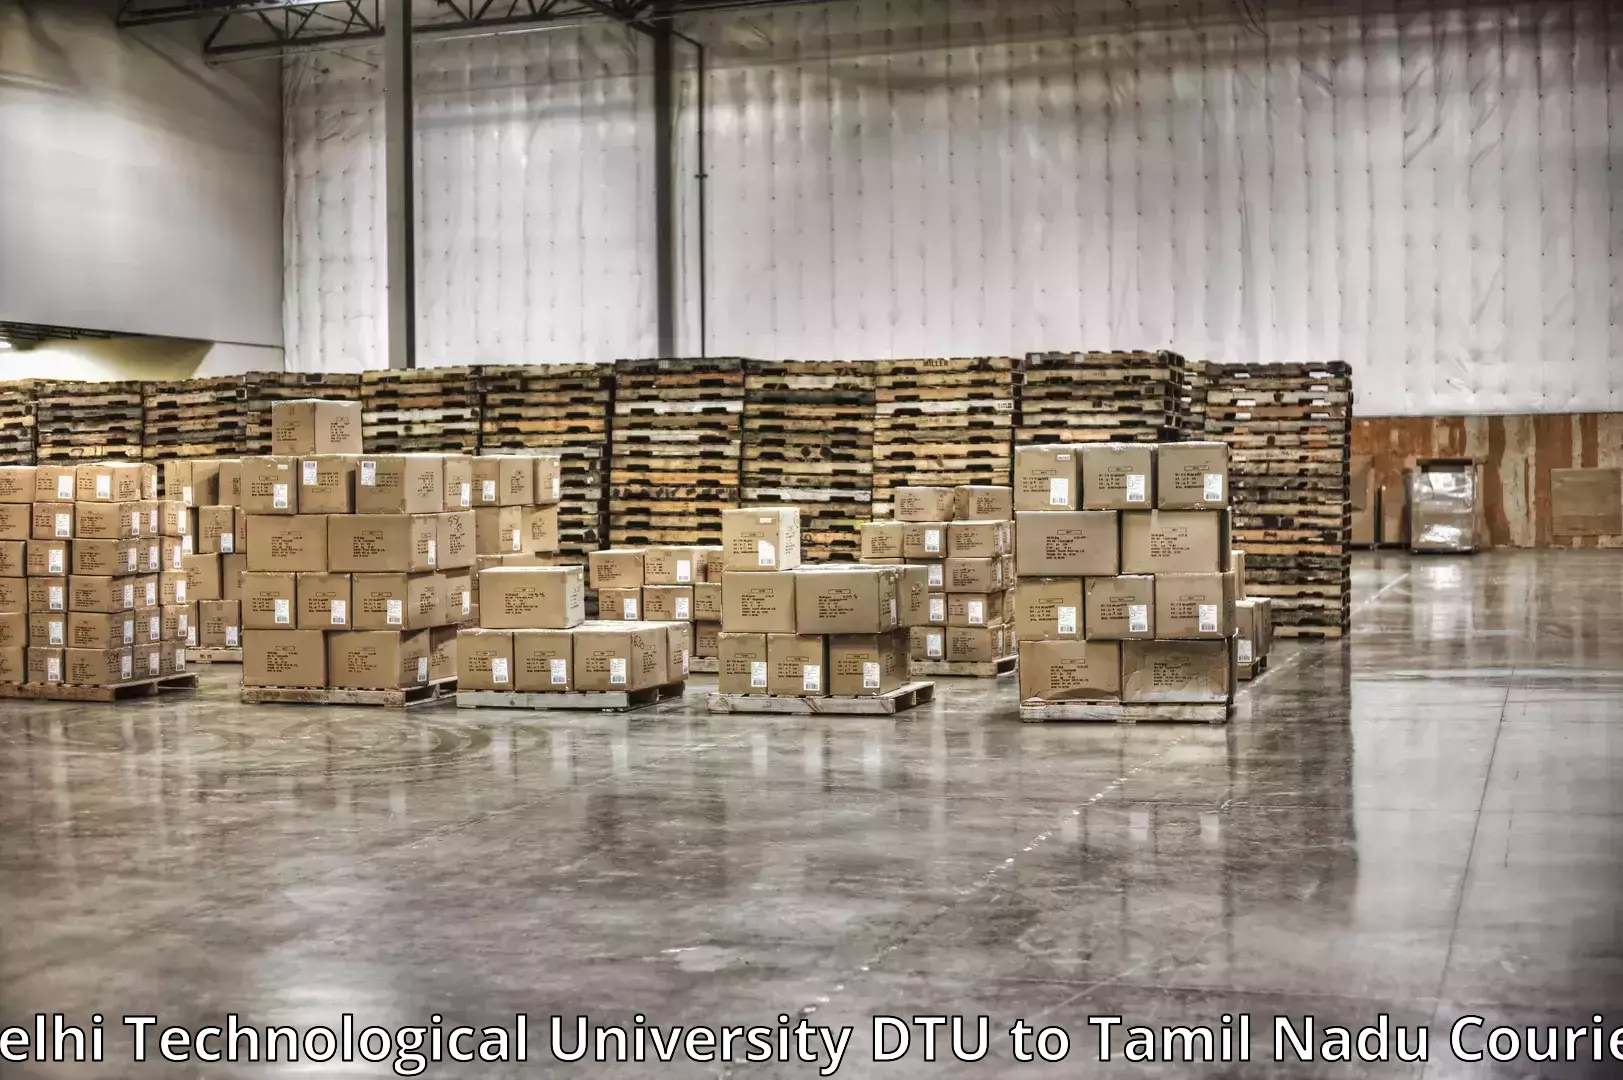 Furniture moving assistance Delhi Technological University DTU to Ambasamudram